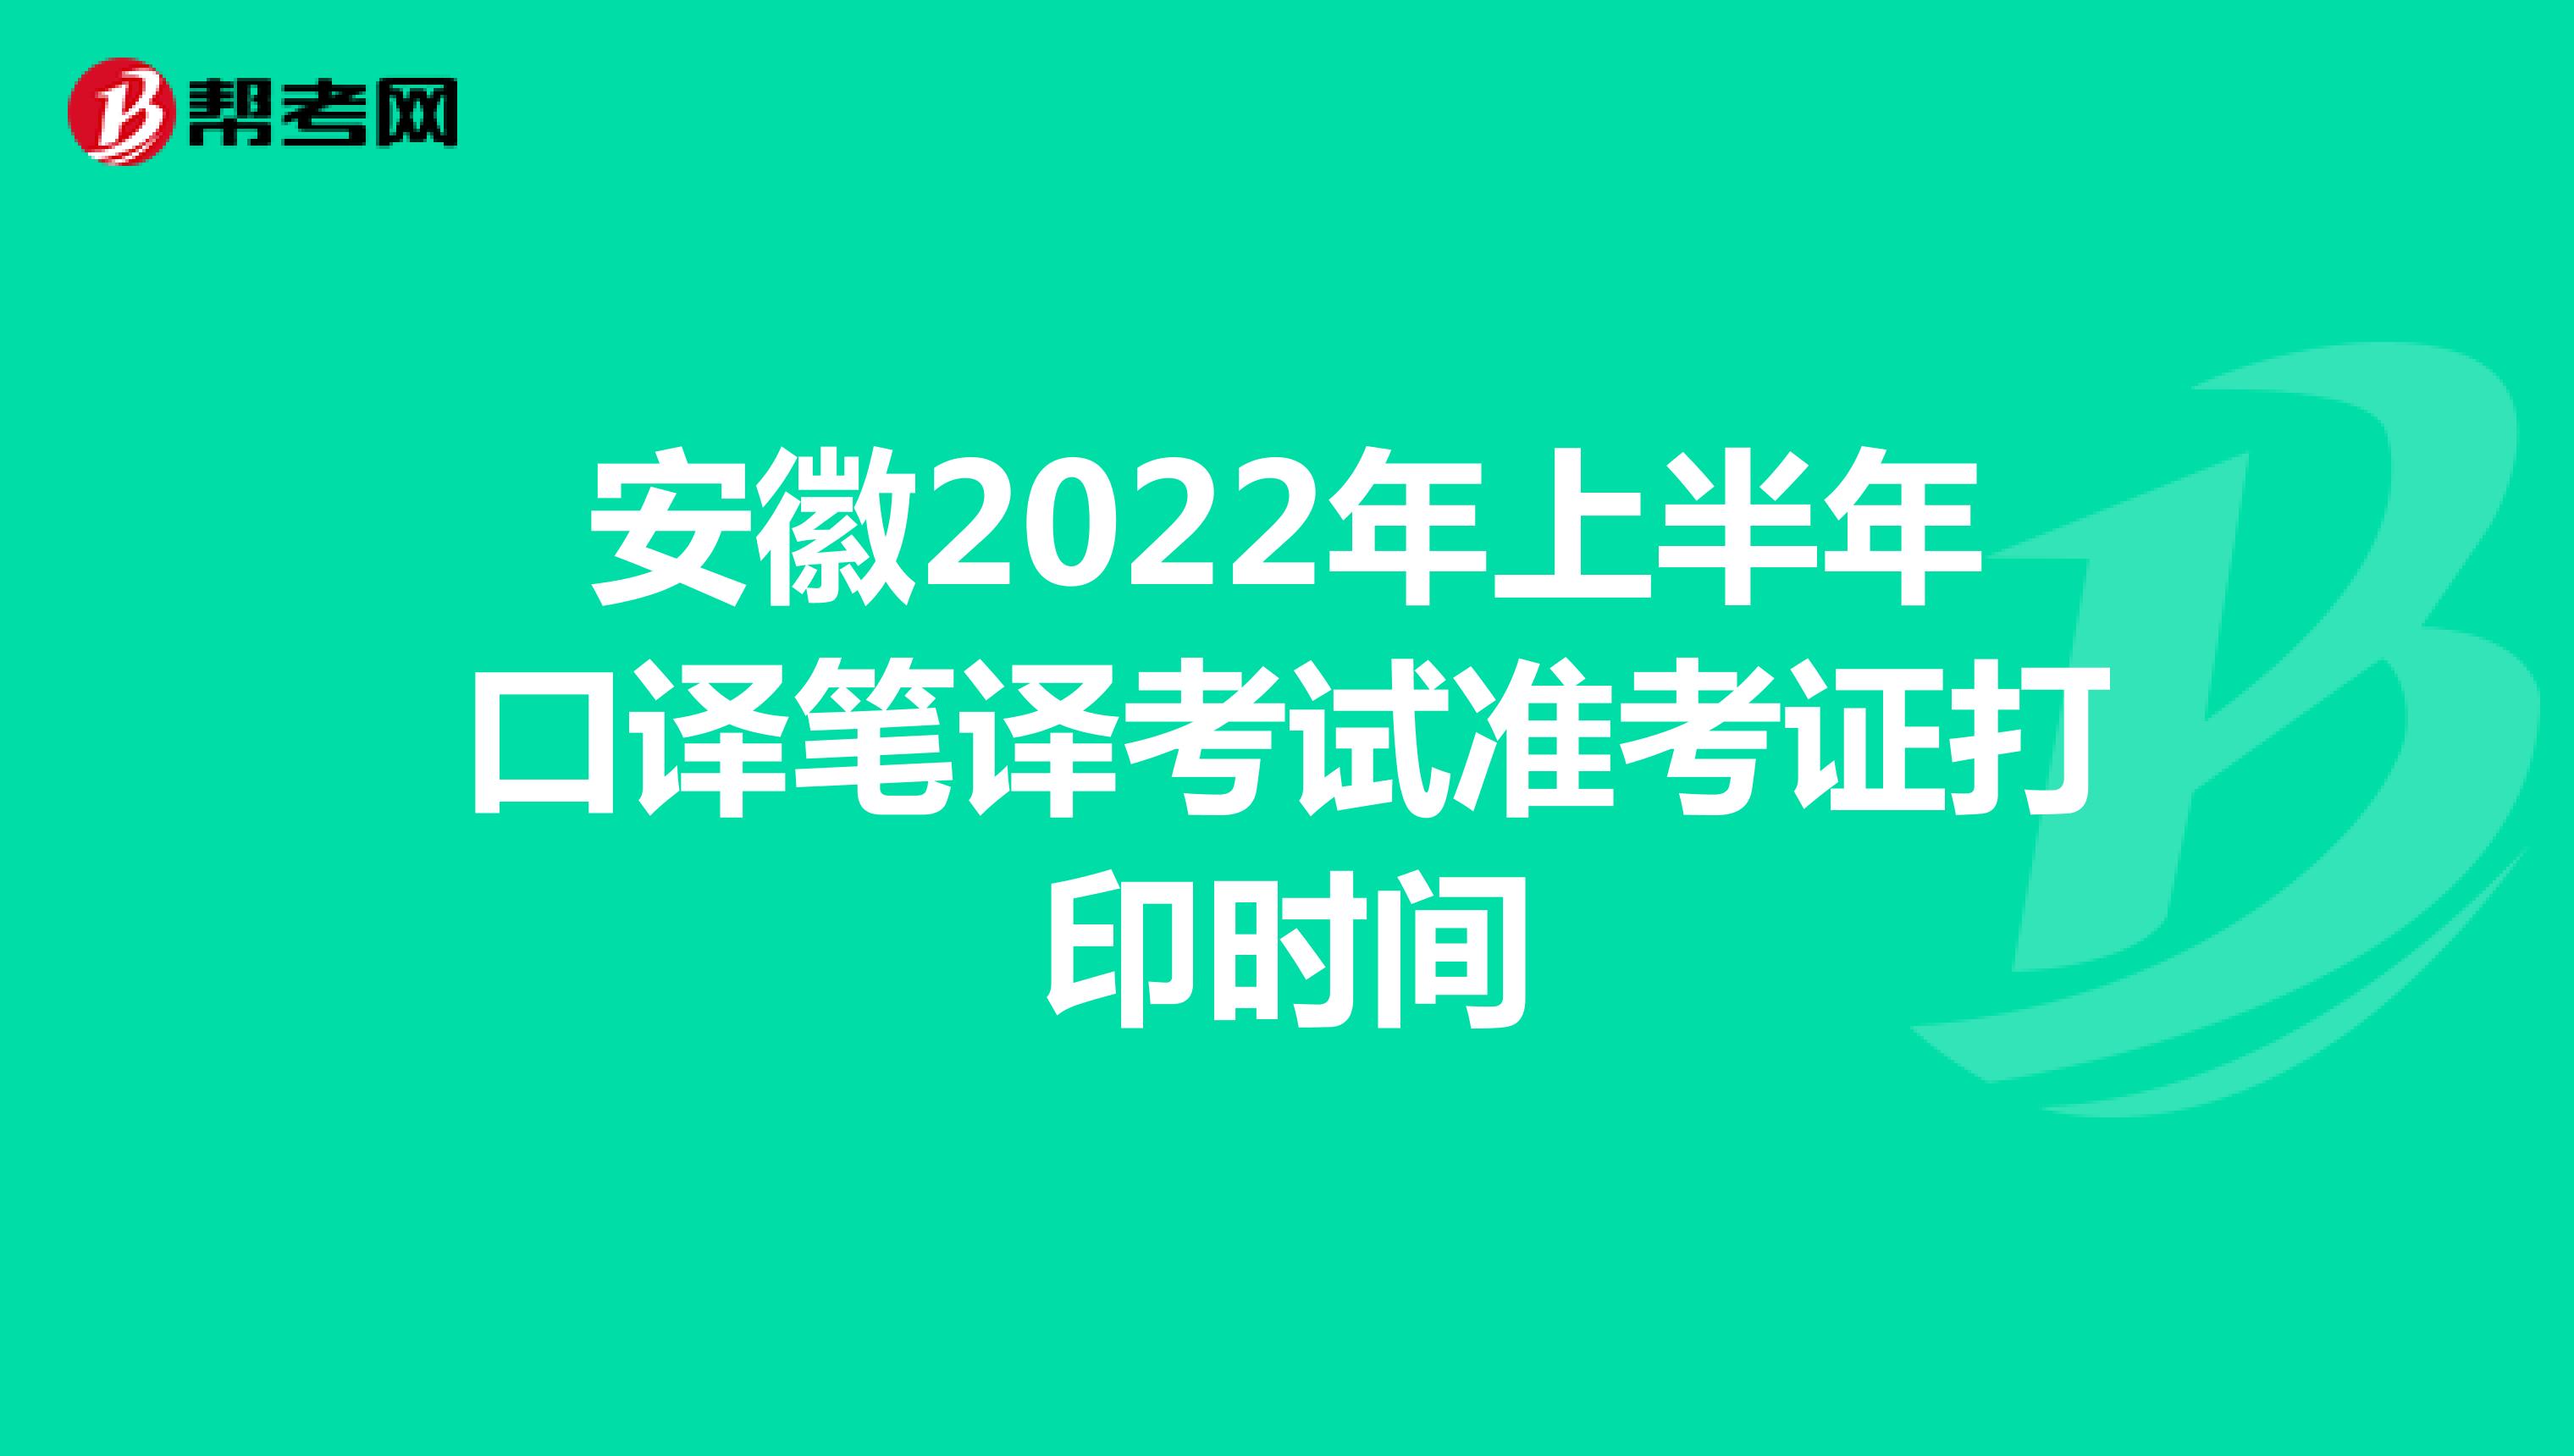 安徽2022年上半年口译笔译考试准考证打印时间